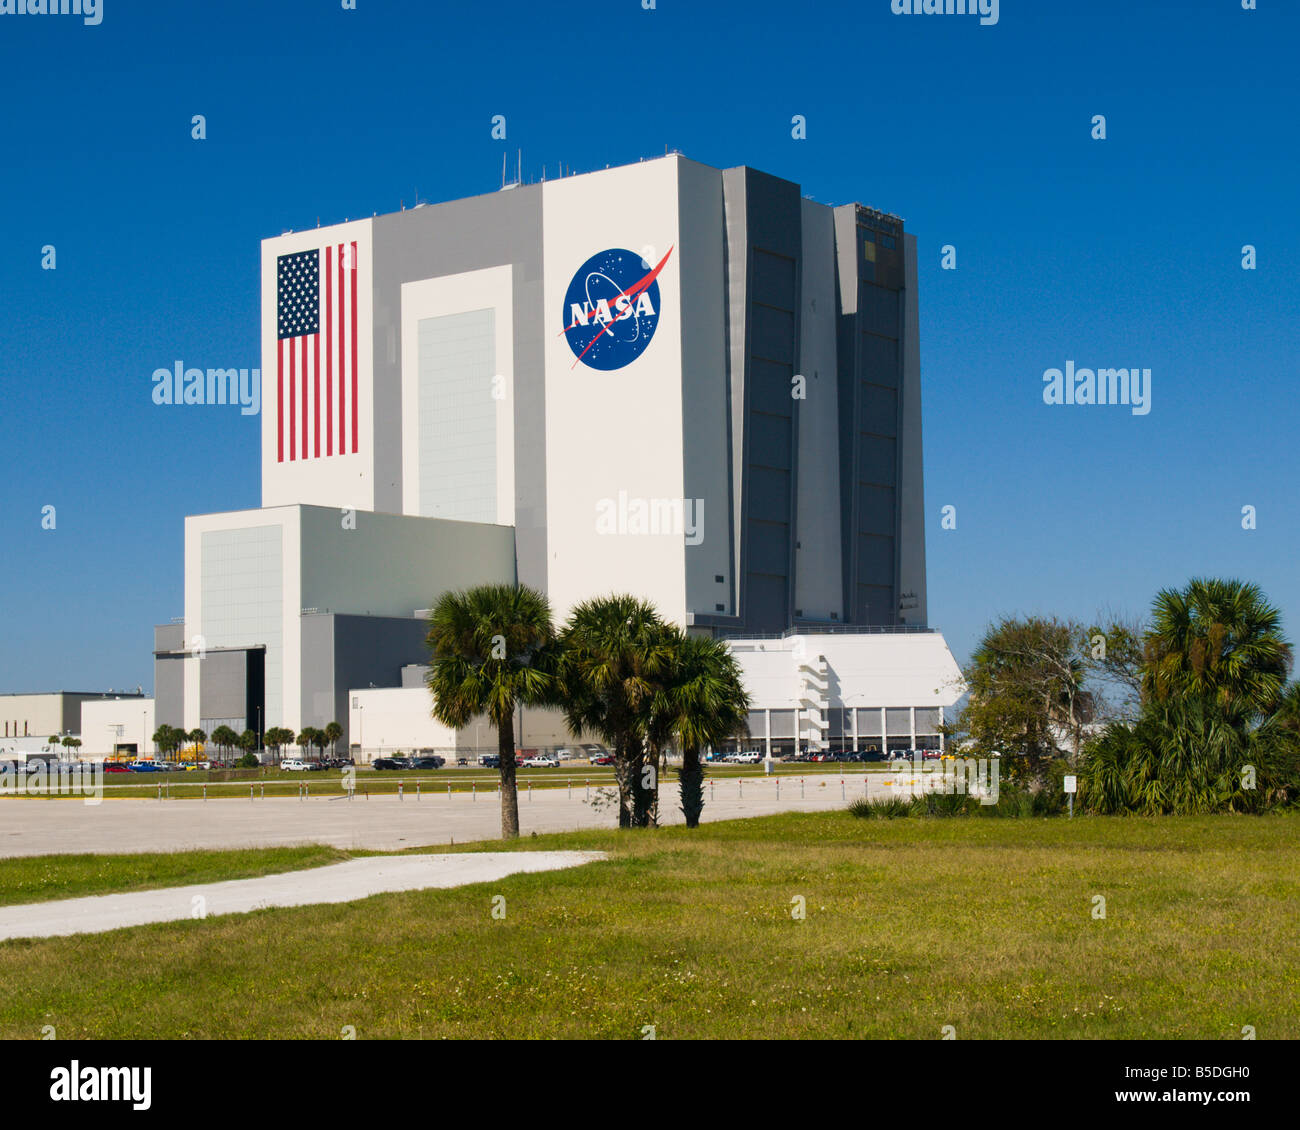 El transbordador espacial está reunido aquí en la NASA en el Kennedy Space Center en Florida, en el edificio de ensamblaje de vehículos Foto de stock